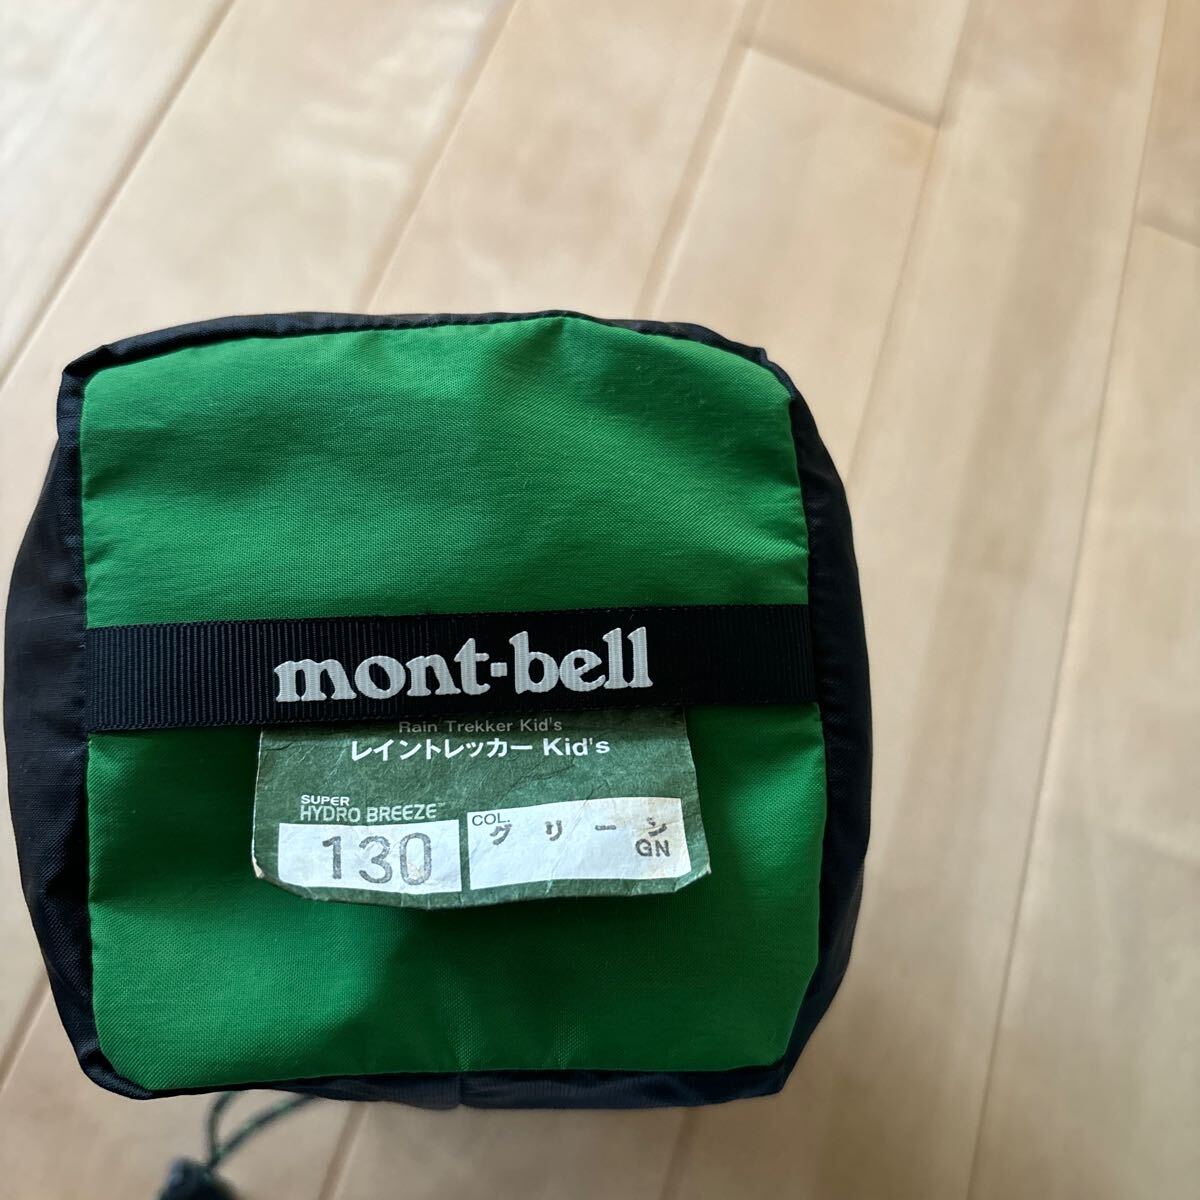 mont-bell Mont Bell дождь Tracker непромокаемая одежда 